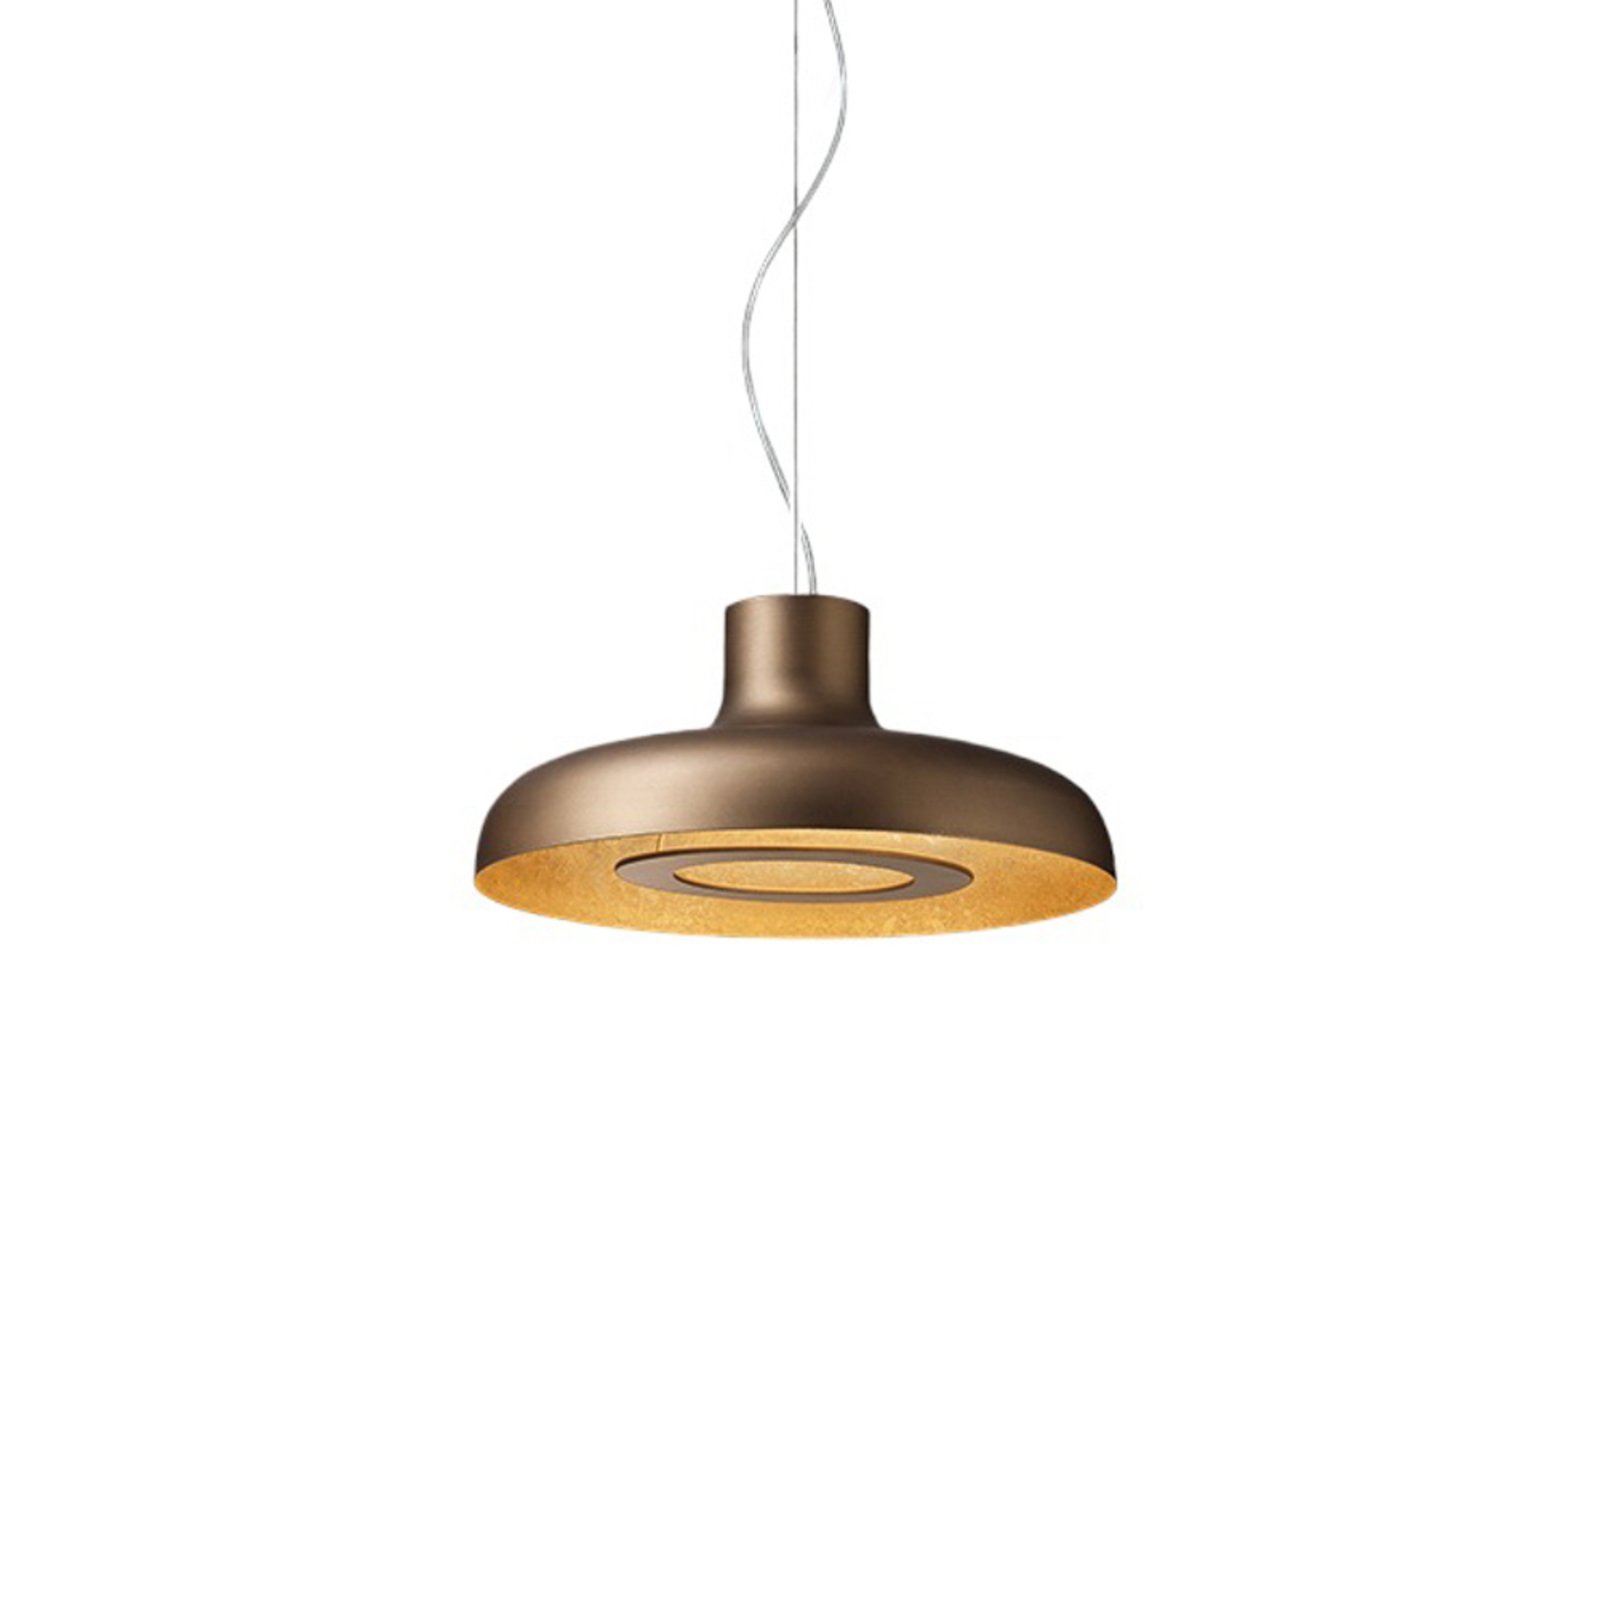 ICONE Duetto LED lampa wisząca 927 Ø55cm brąz/złoto